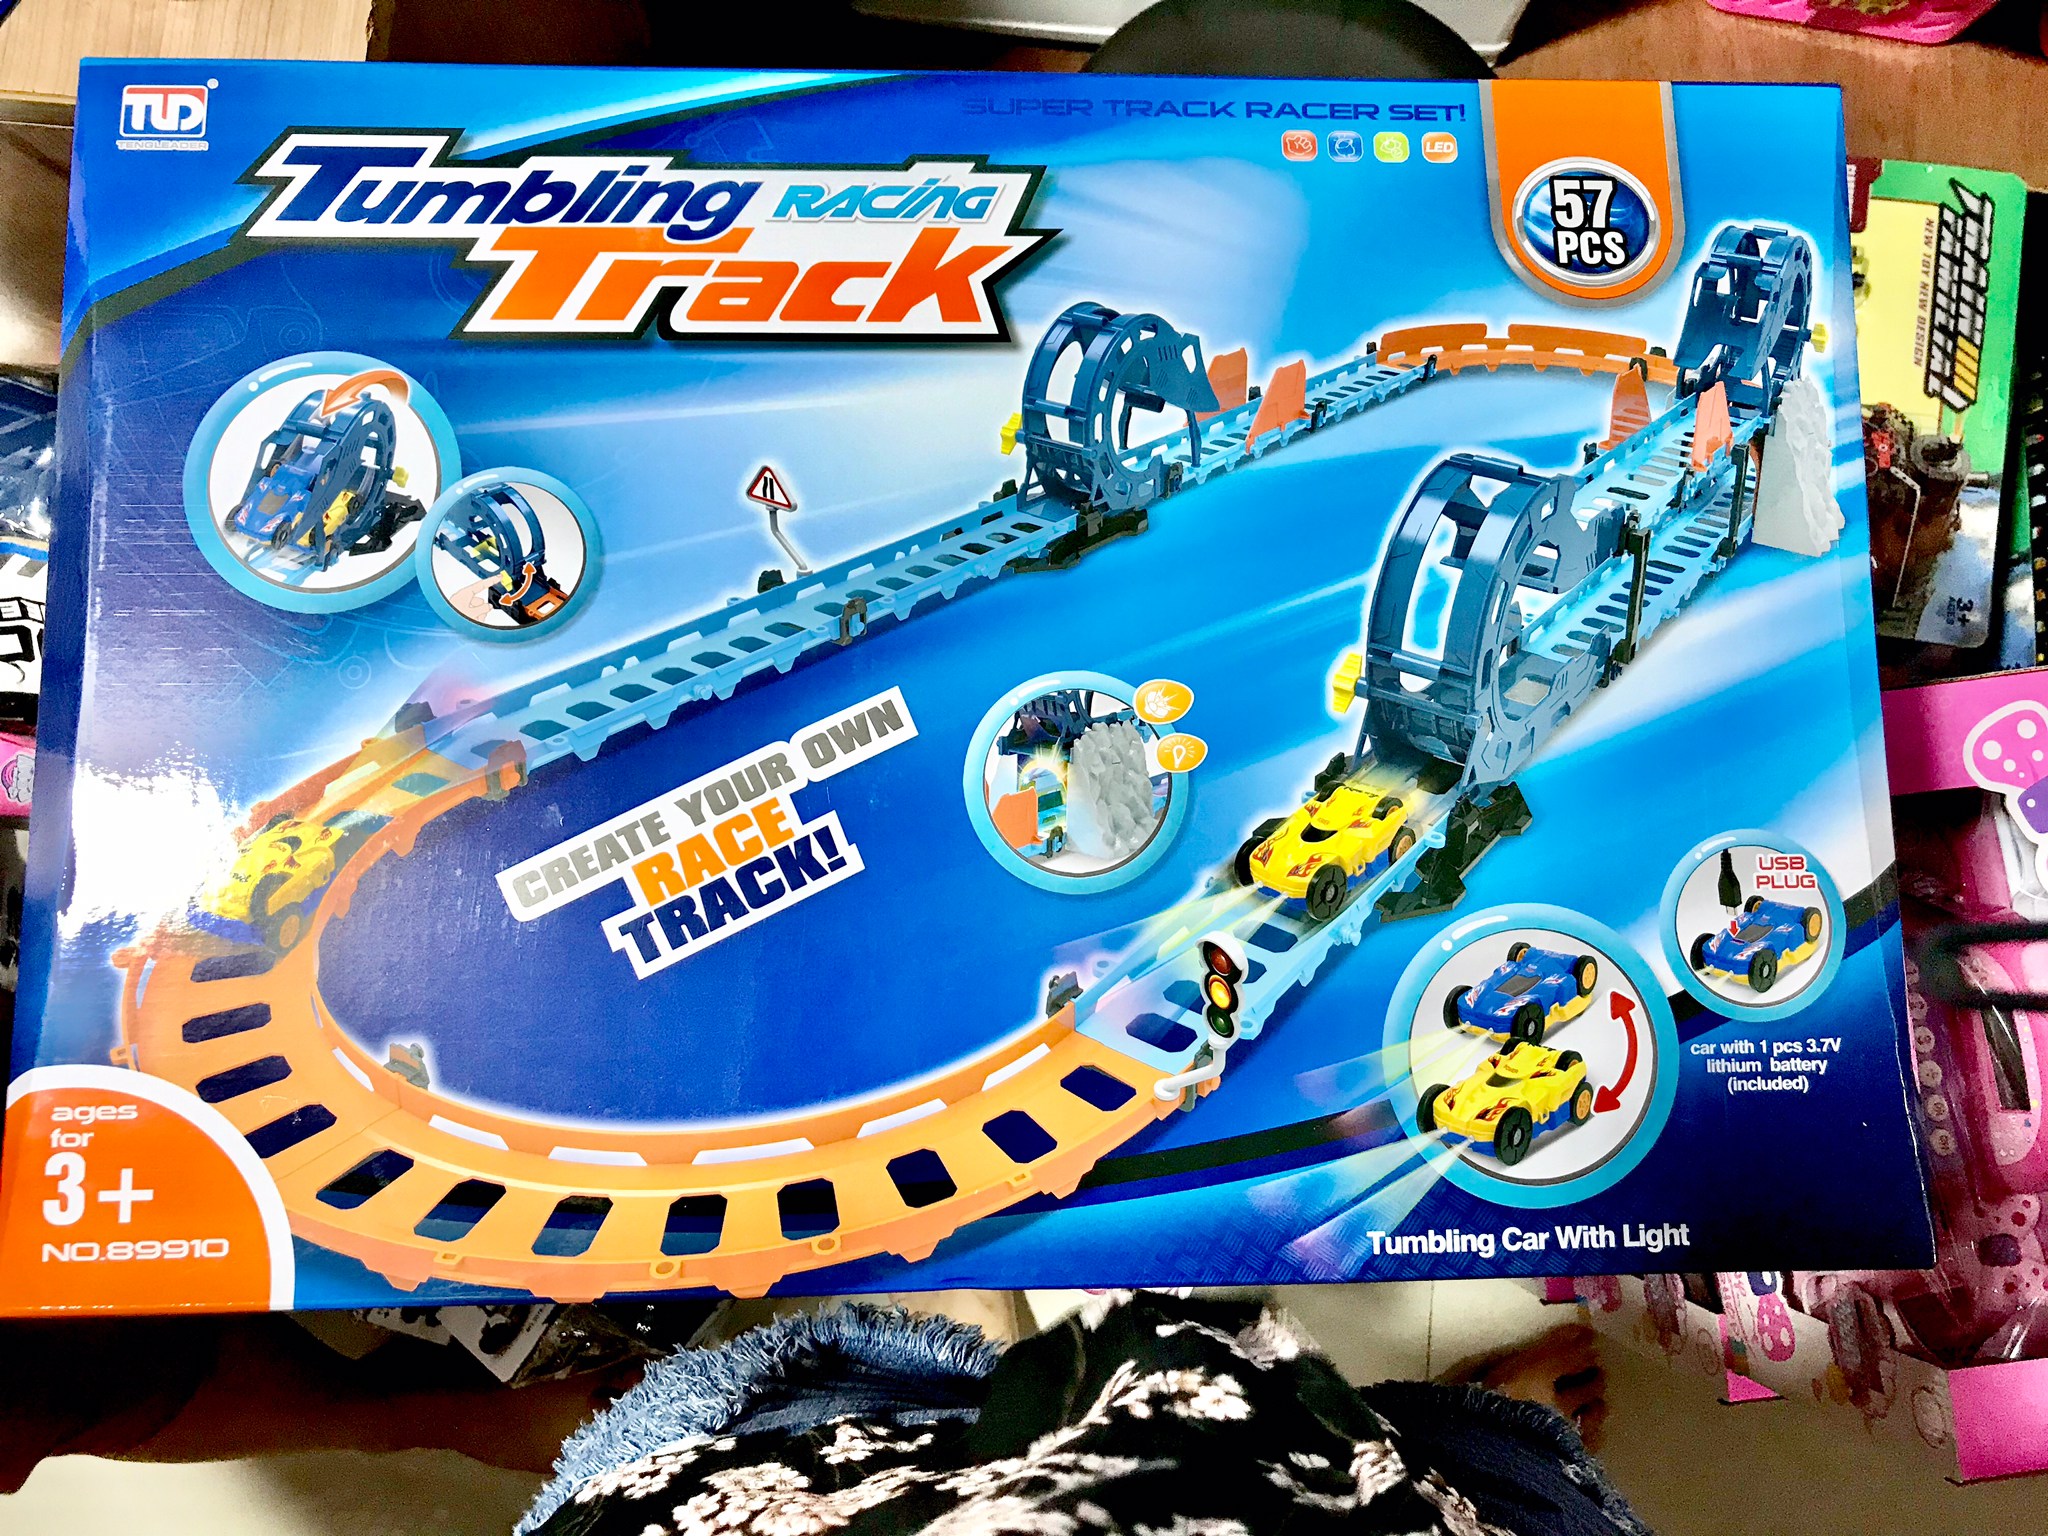 ✨รถชาจแบต รางรถไฟ Tumbling Track 57 ชิ้น ตีลังกาได้ งานห้าง รถไฟของเล่น ชุดรถไฟ